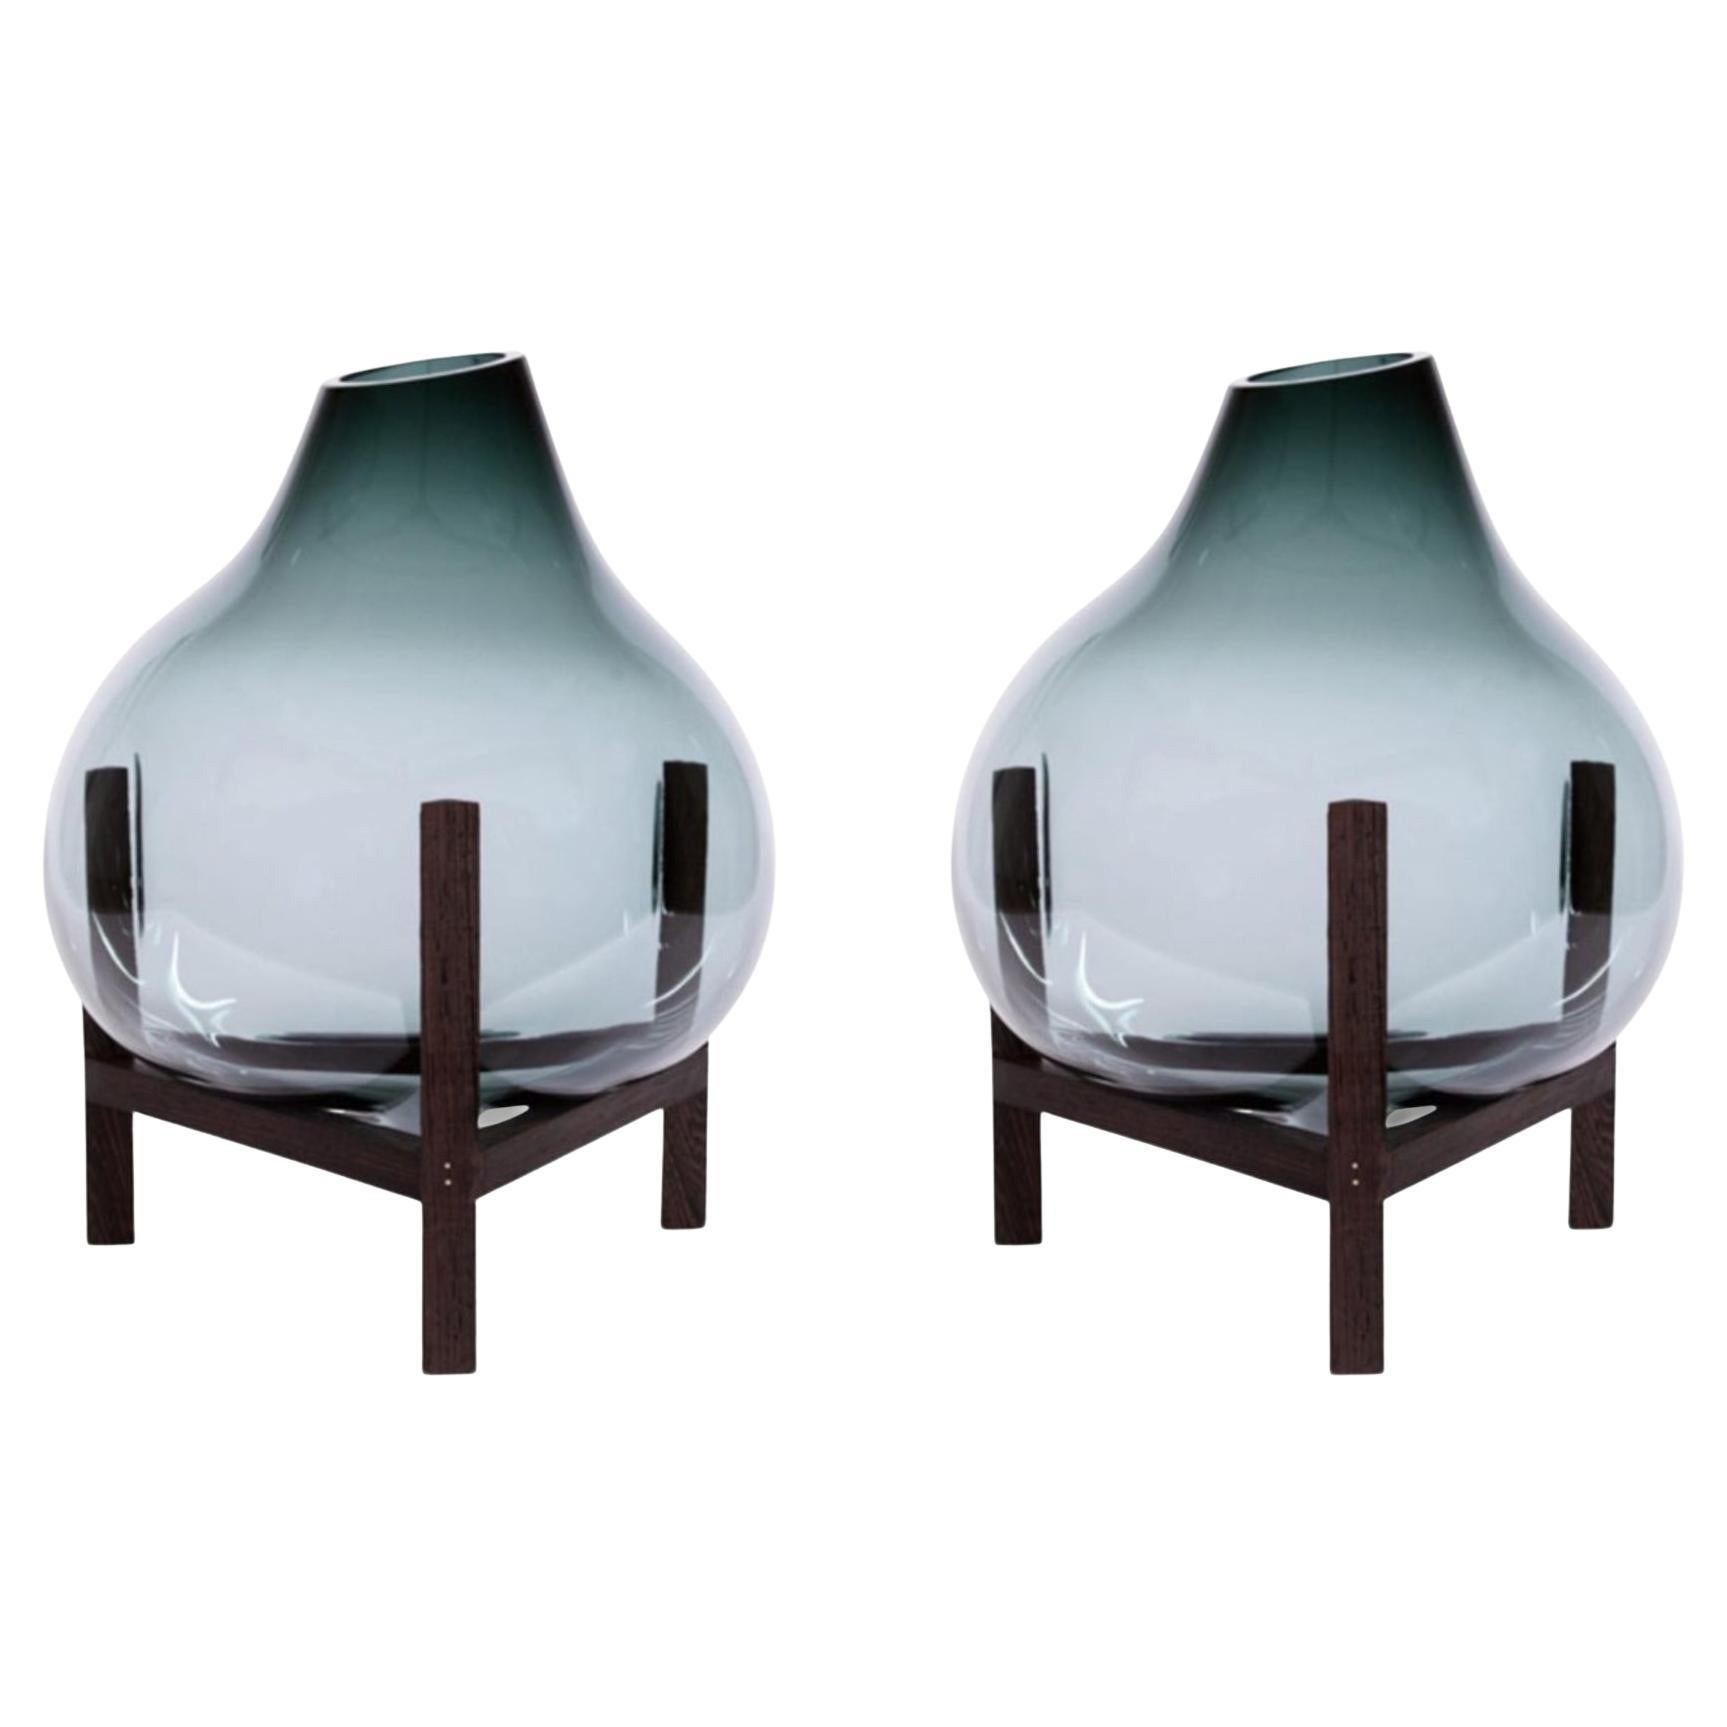 Set of 2 Round Square Grey Triangular Vase by Studio Thier & Van Daalen For Sale